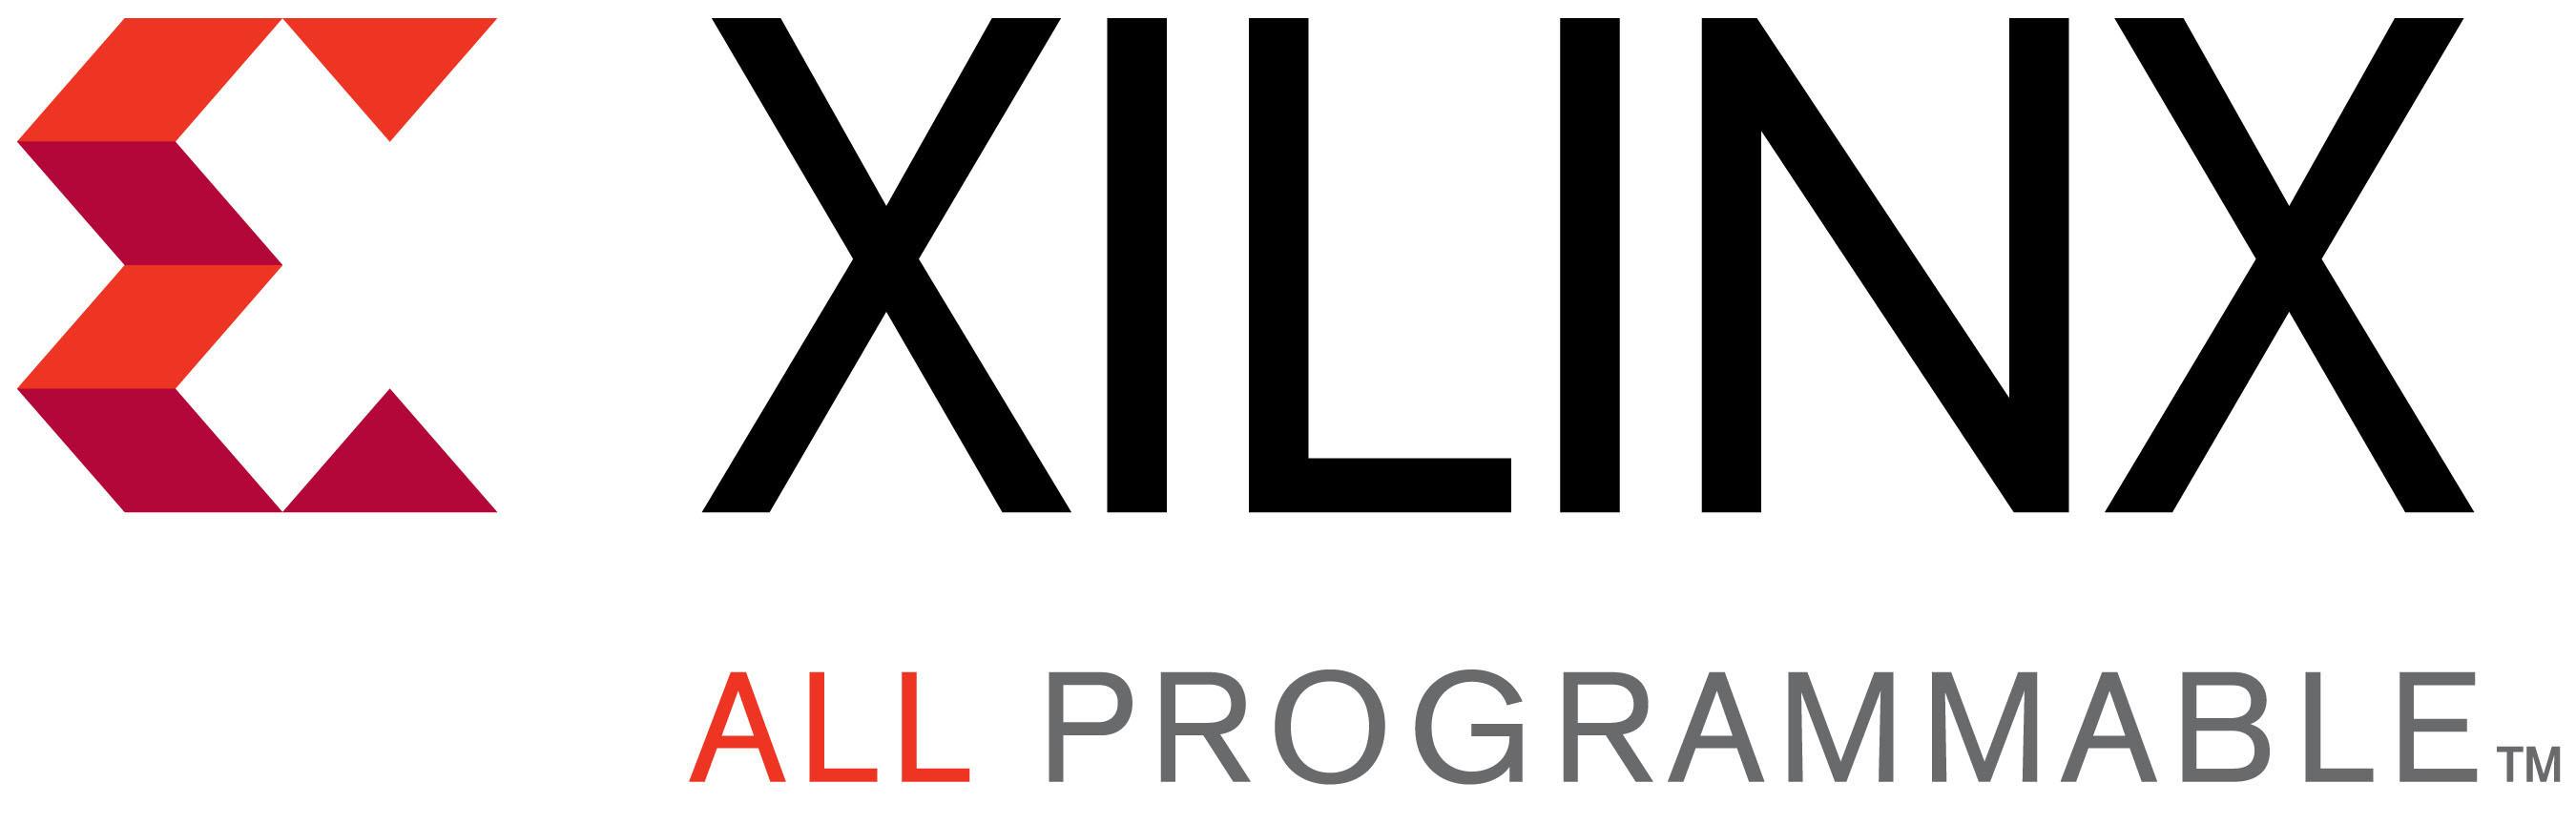 Xilinx Logo - XILINX LOGO